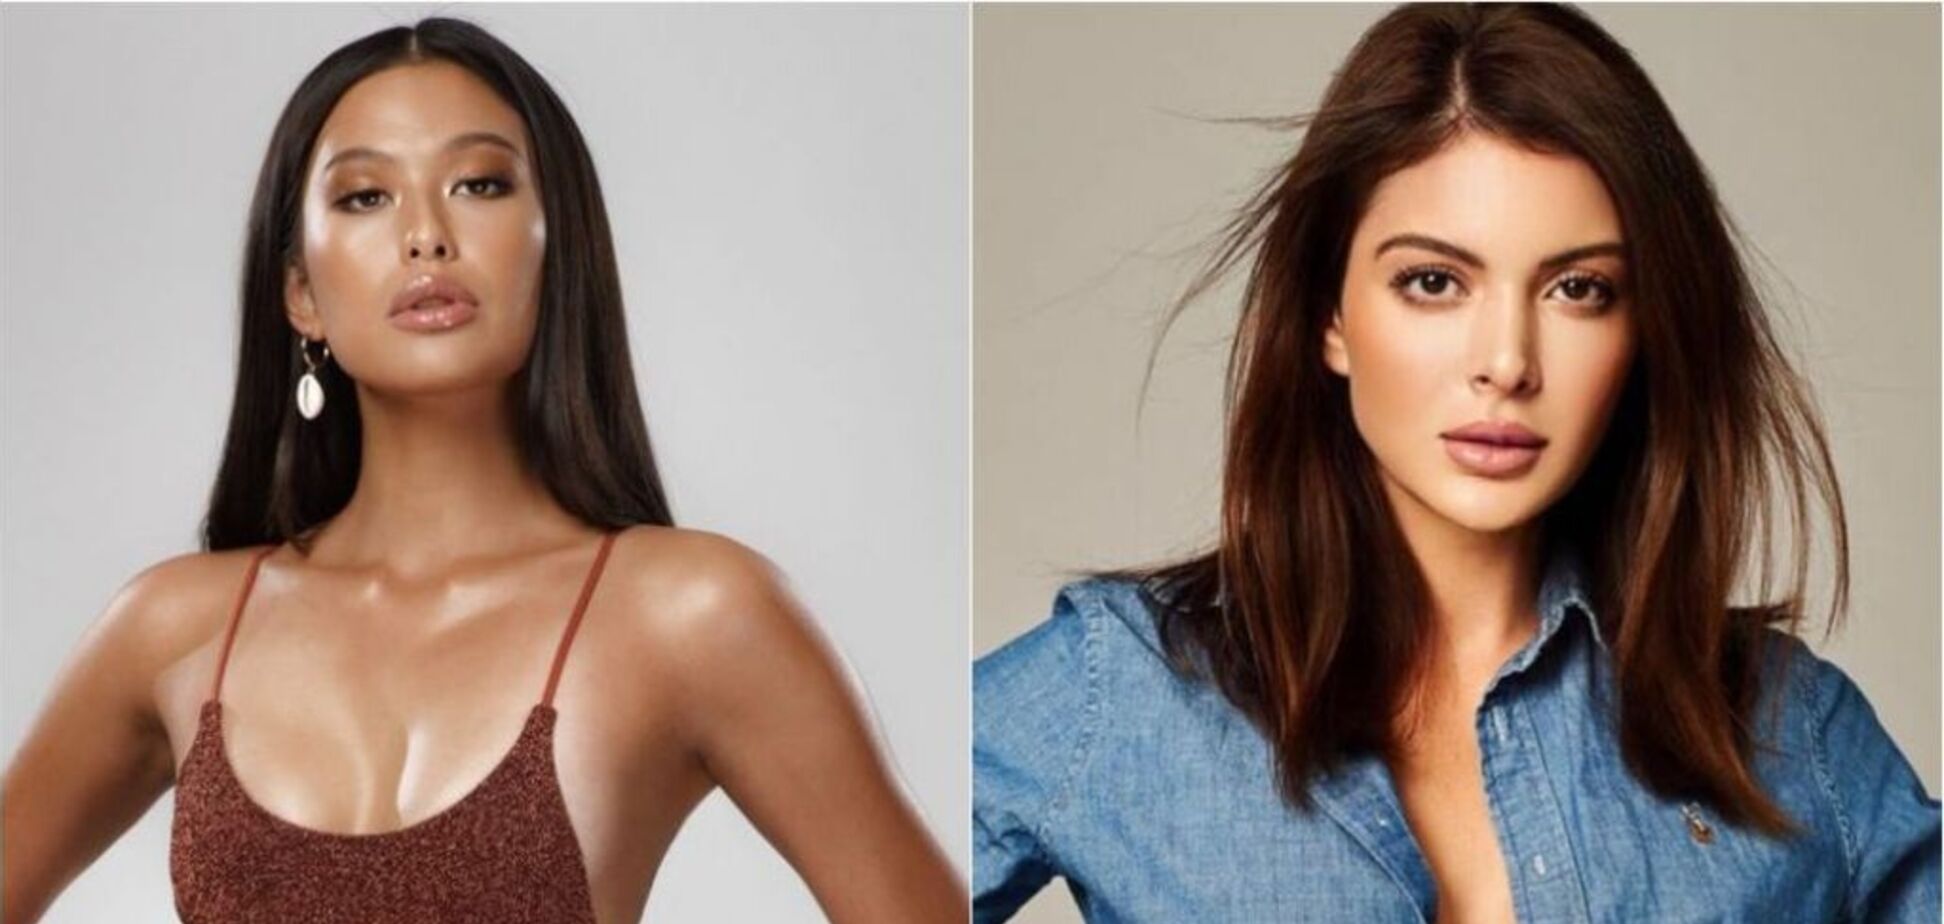 6 фавориток на 'Мисс Мира 2019': как выглядят и кто они